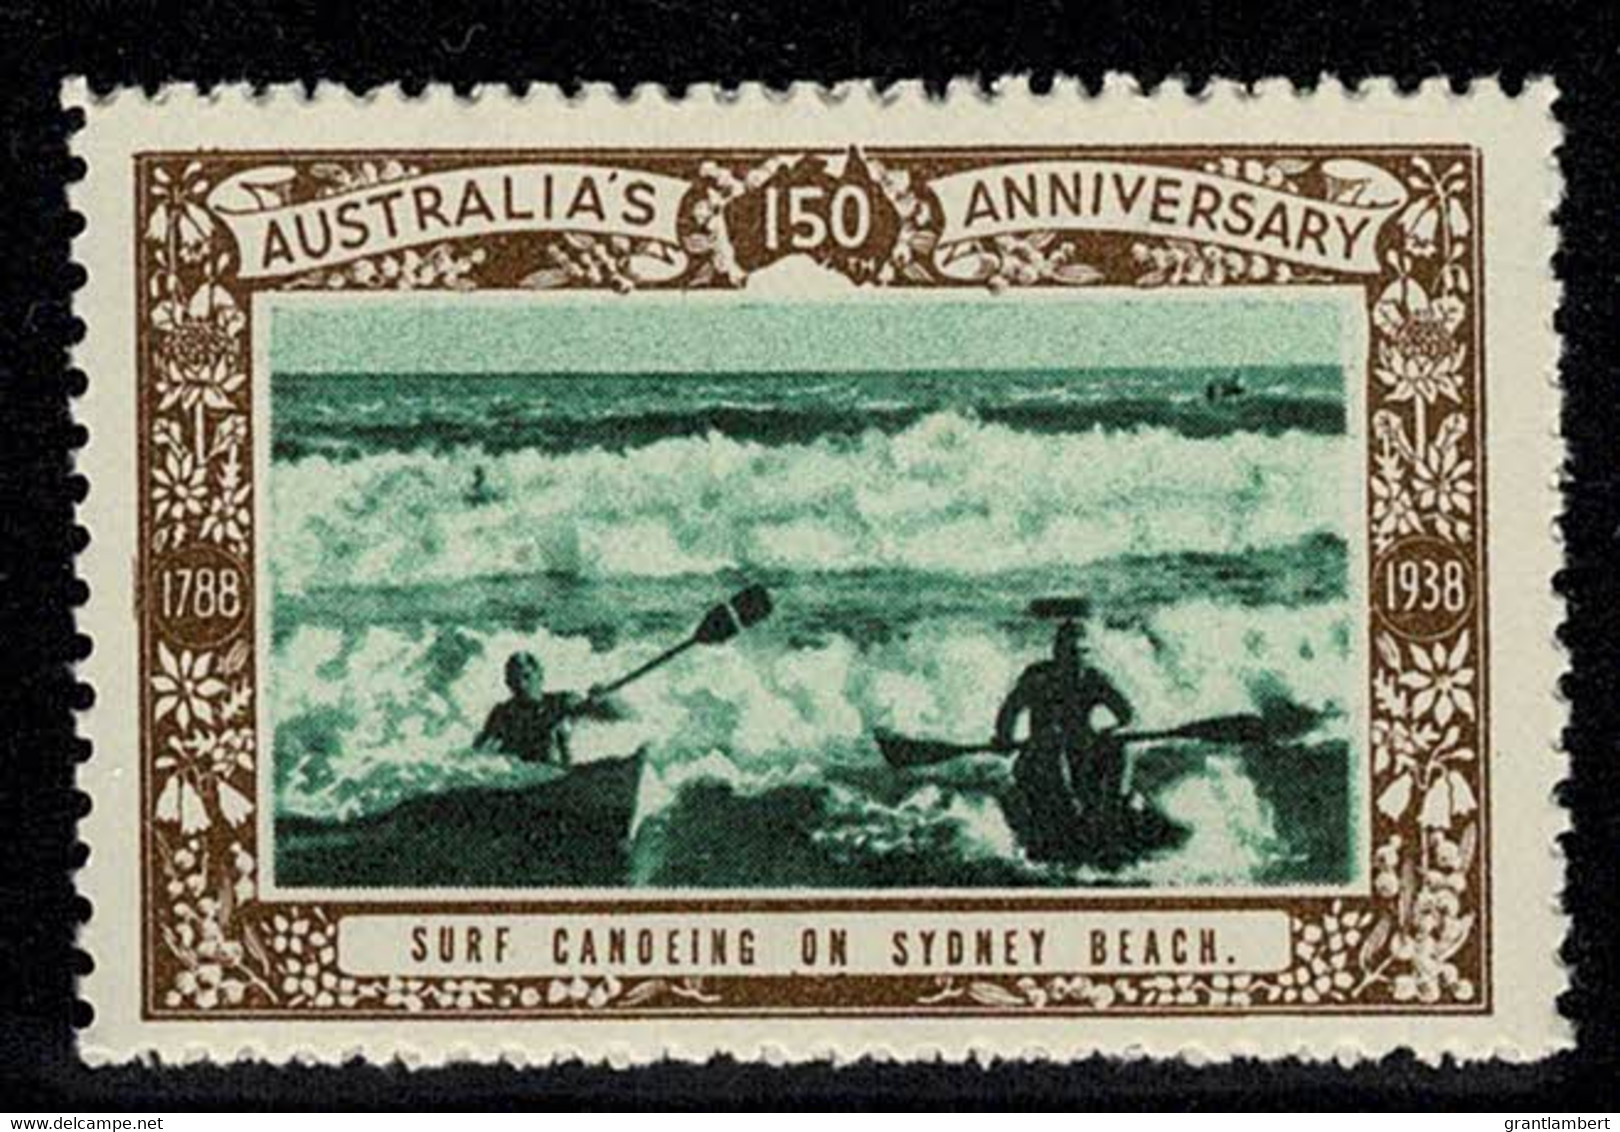 Australia 1938 Surf Canoeing On Sydney Beach - NSW 150th Anniversary Cinderella MNH - Werbemarken, Vignetten